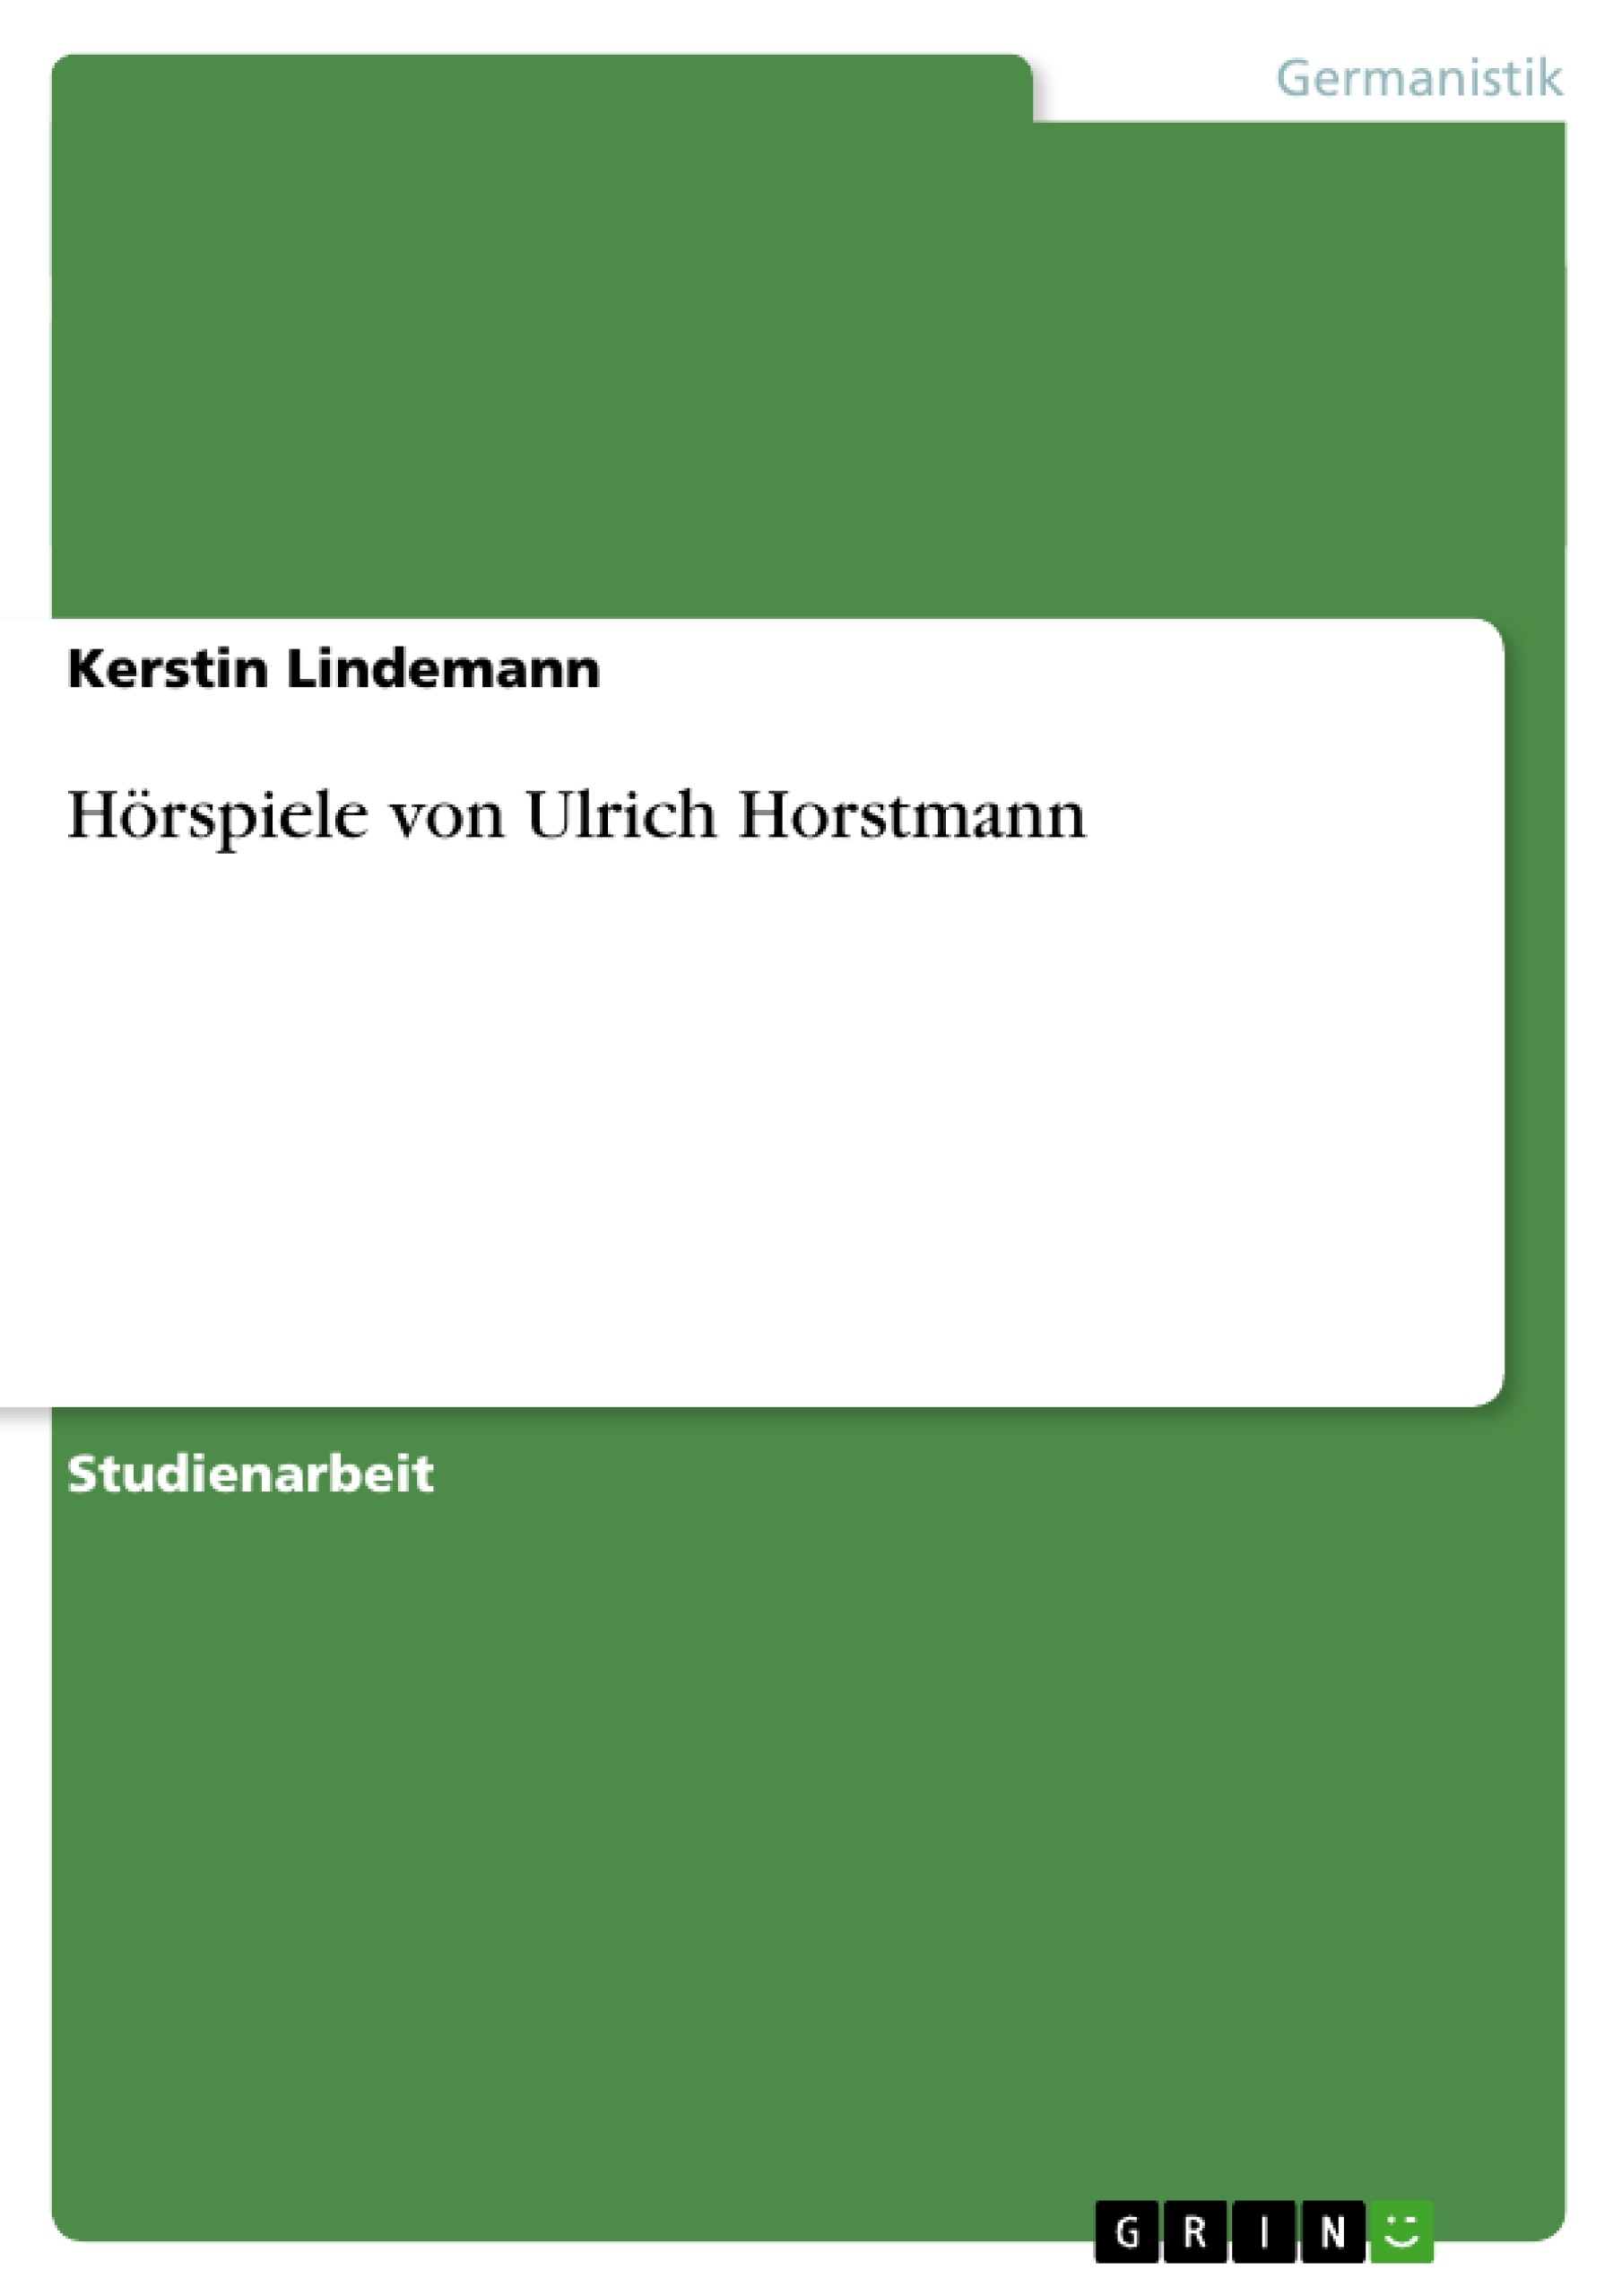 Título: Hörspiele von Ulrich Horstmann